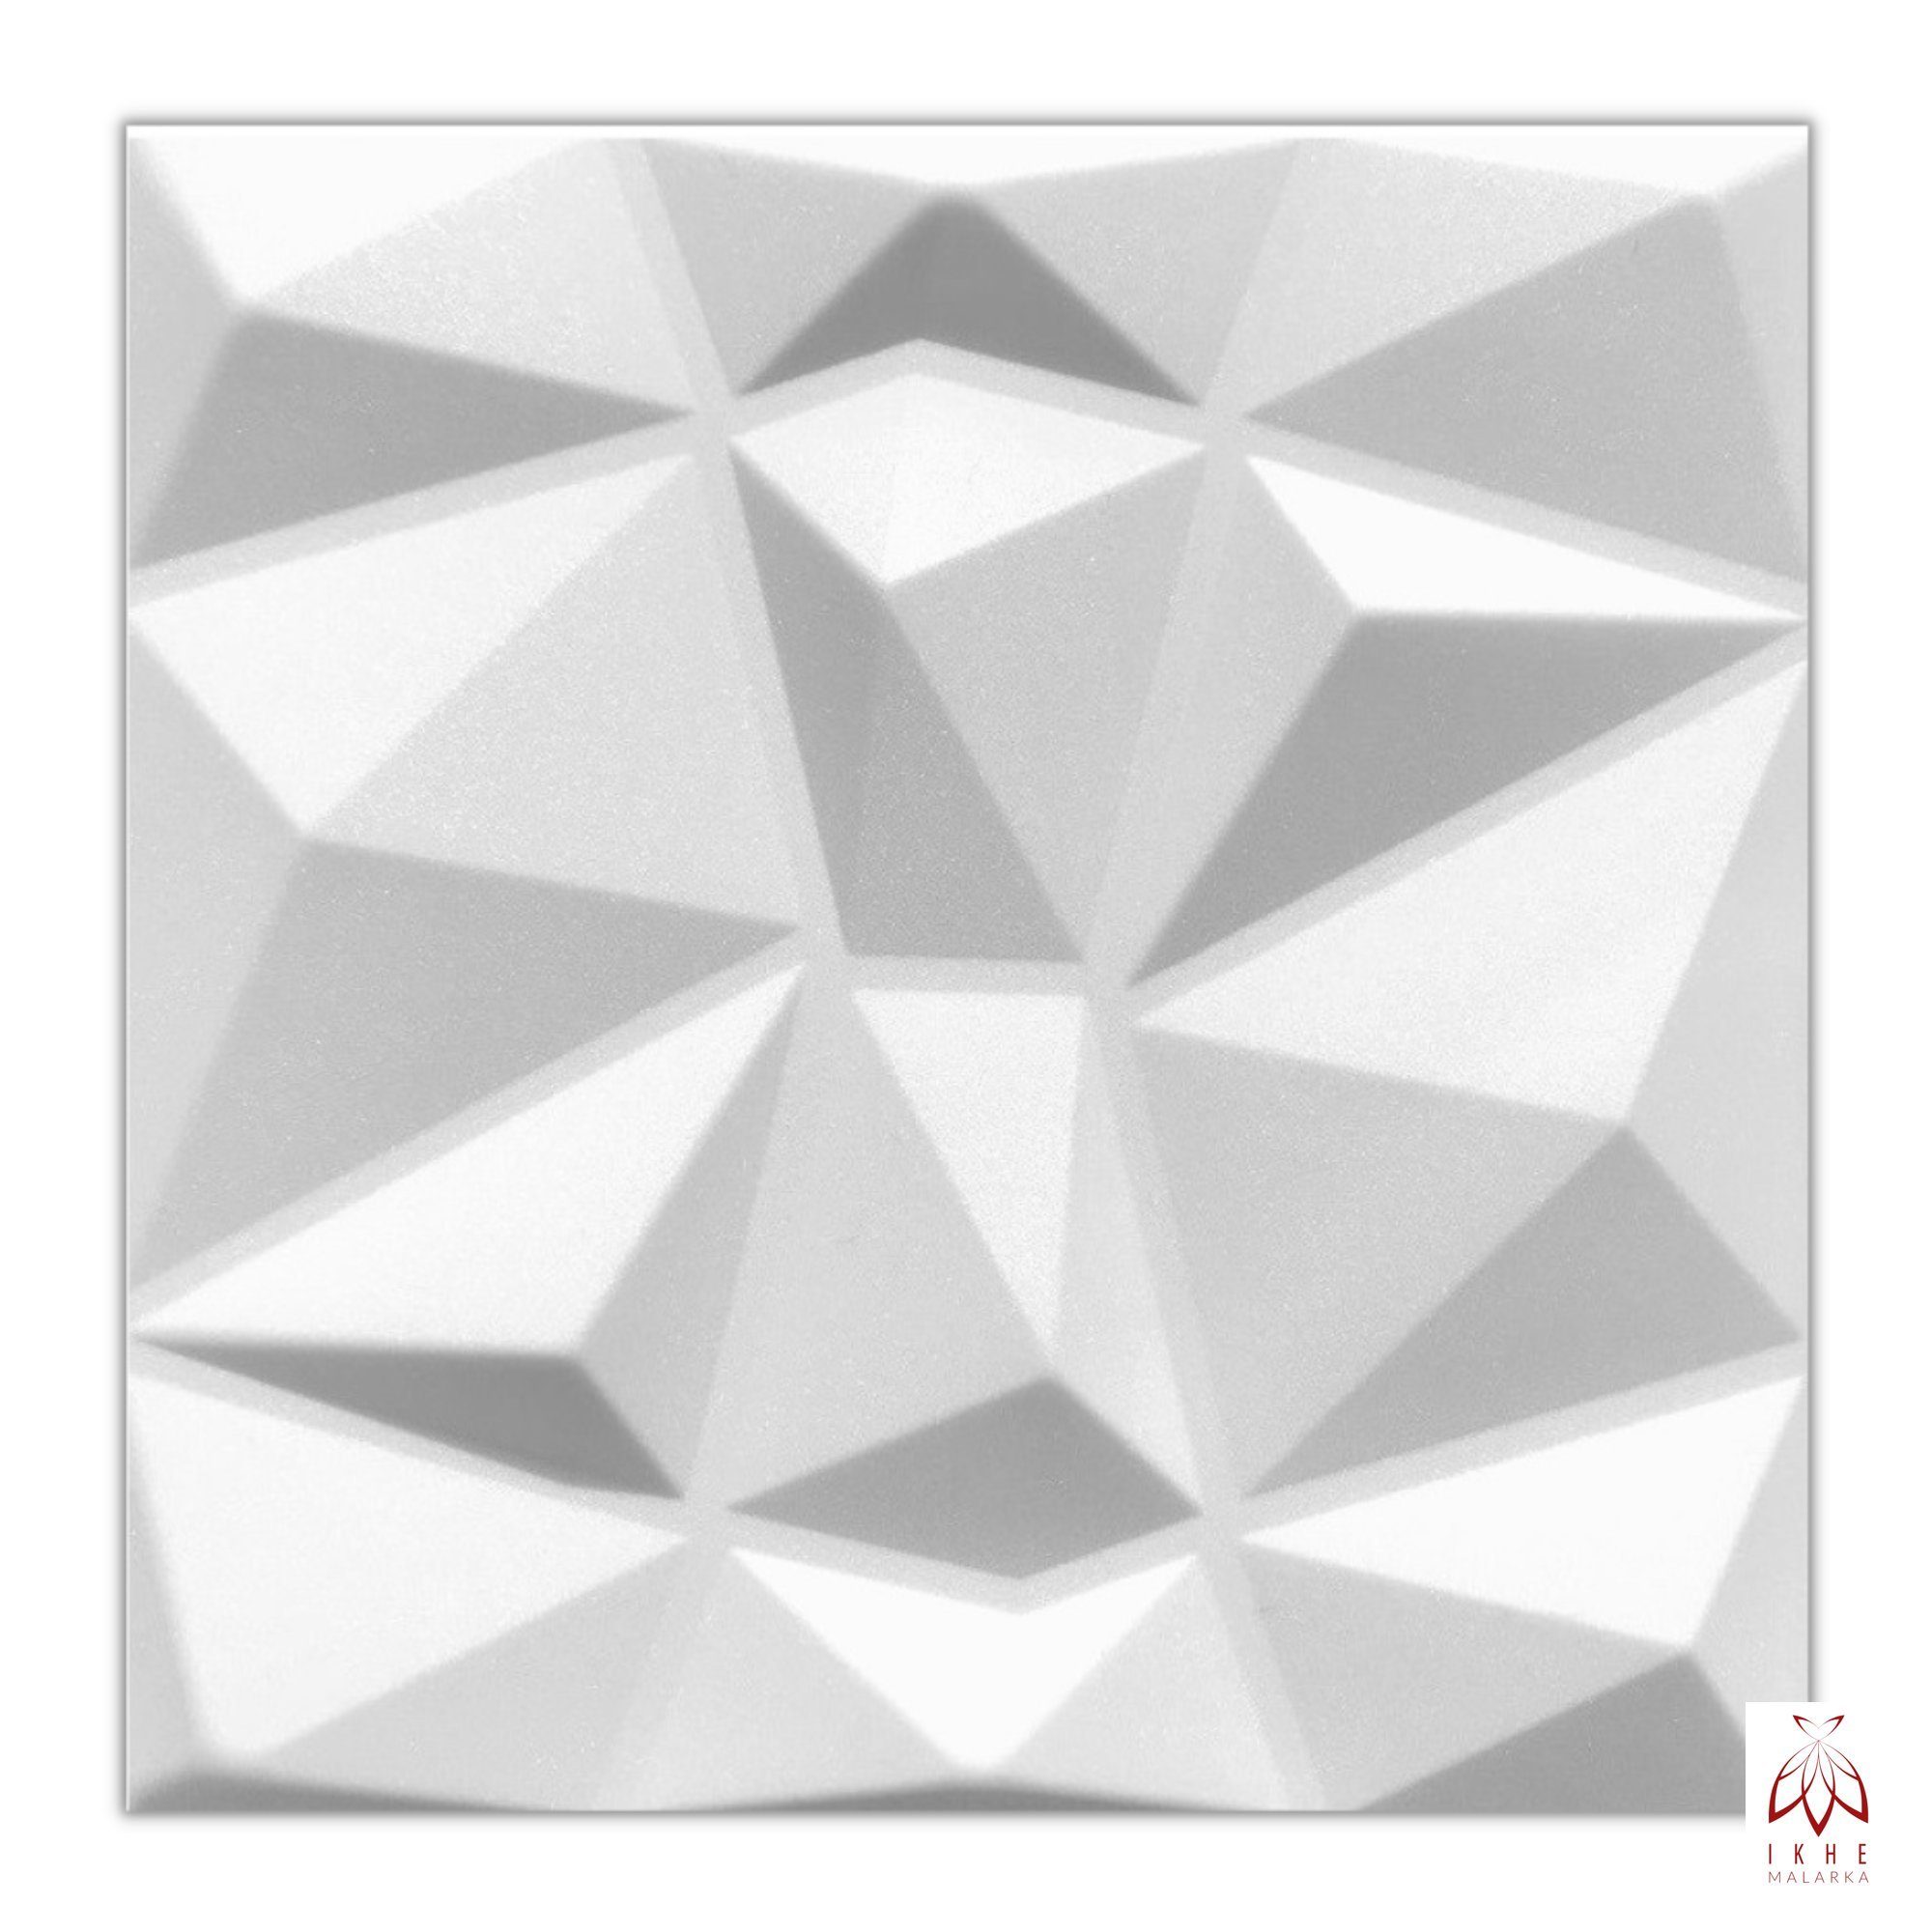 IKHEMalarka 3D Wandpaneel aus Polystyrol Styropor XPS 4m²/16 Stück, BxL: 50,00x50,00 cm, 0,25 qm, (16-tlg) 3D Paneelen für Decke oder Wand